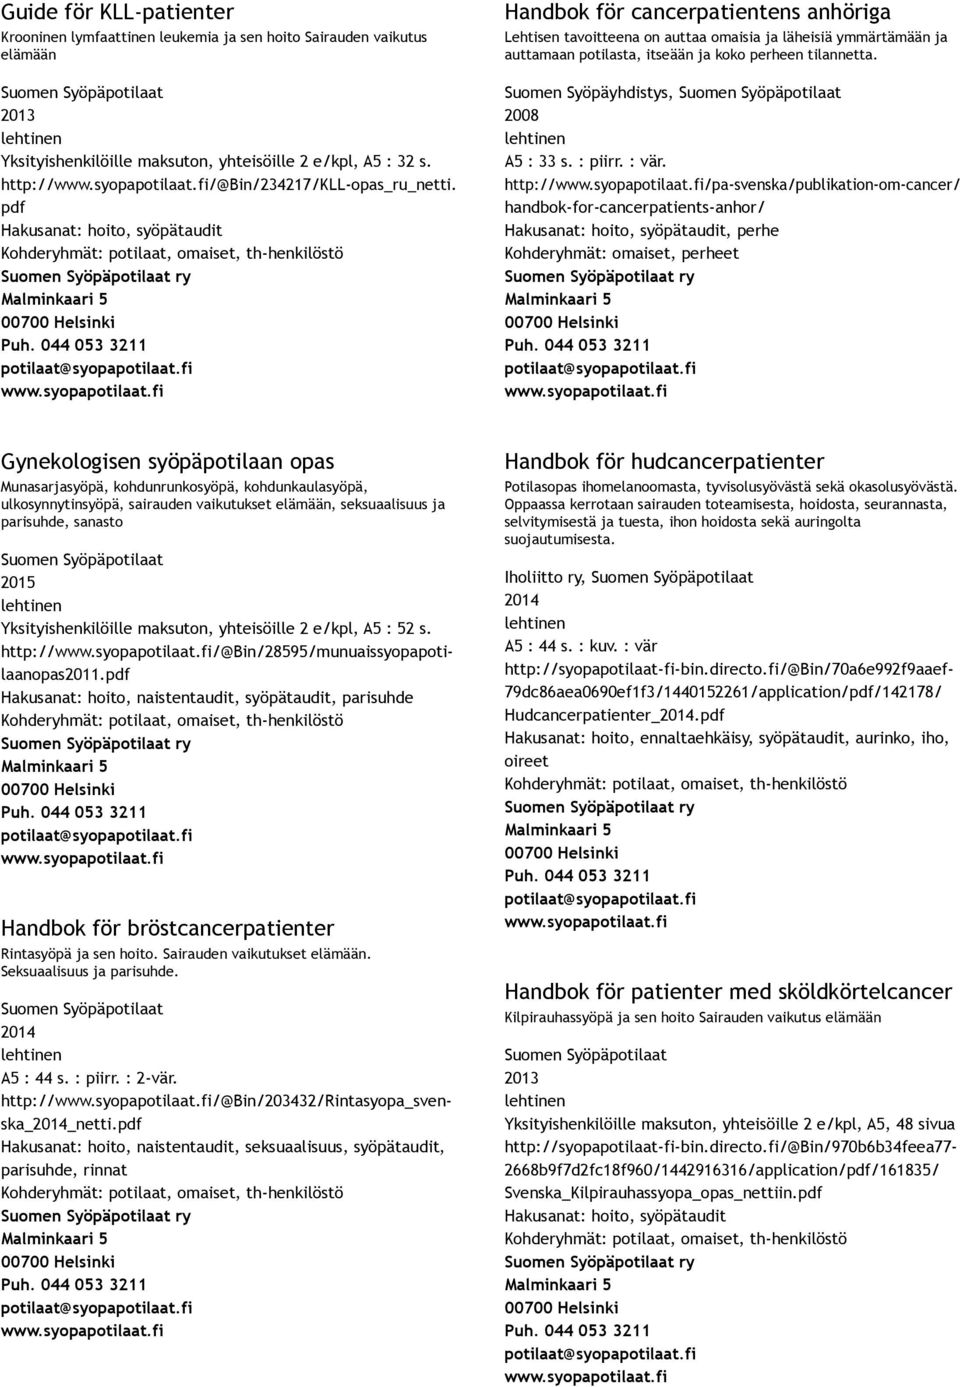 http:///pa svenska/publikation om cancer/ handbok for cancerpatients anhor/, perhe Kohderyhmät: omaiset, perheet Gynekologisen syöpäpotilaan opas Munasarjasyöpä, kohdunrunkosyöpä, kohdunkaulasyöpä,